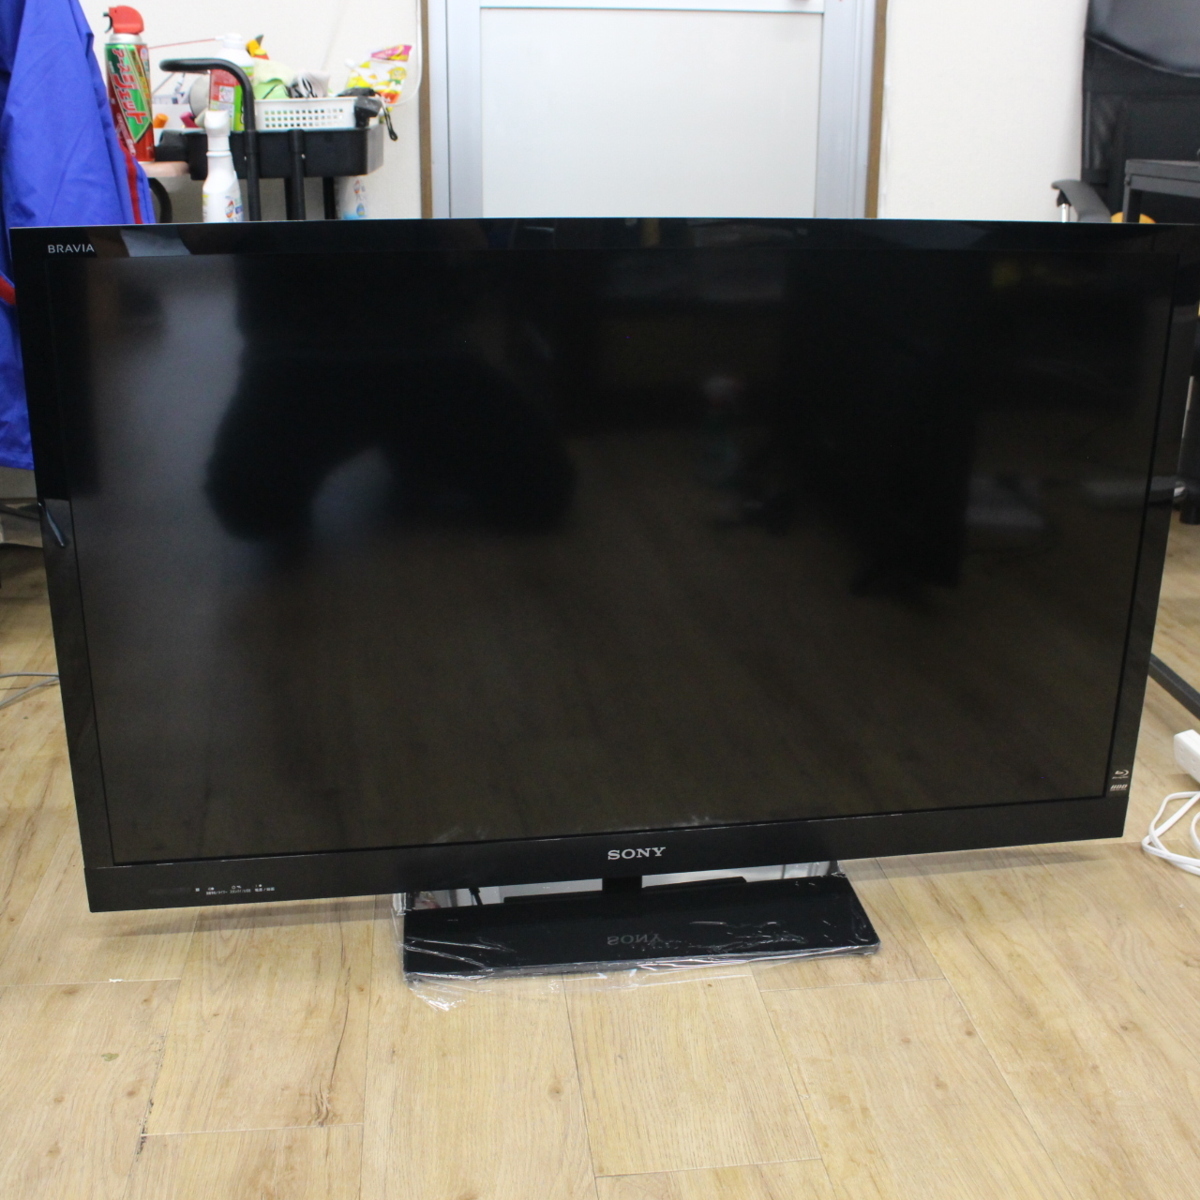 東京都調布市にて ソニー 液晶テレビ KDL-46HX65R 2012年製 を出張買取させて頂きました。